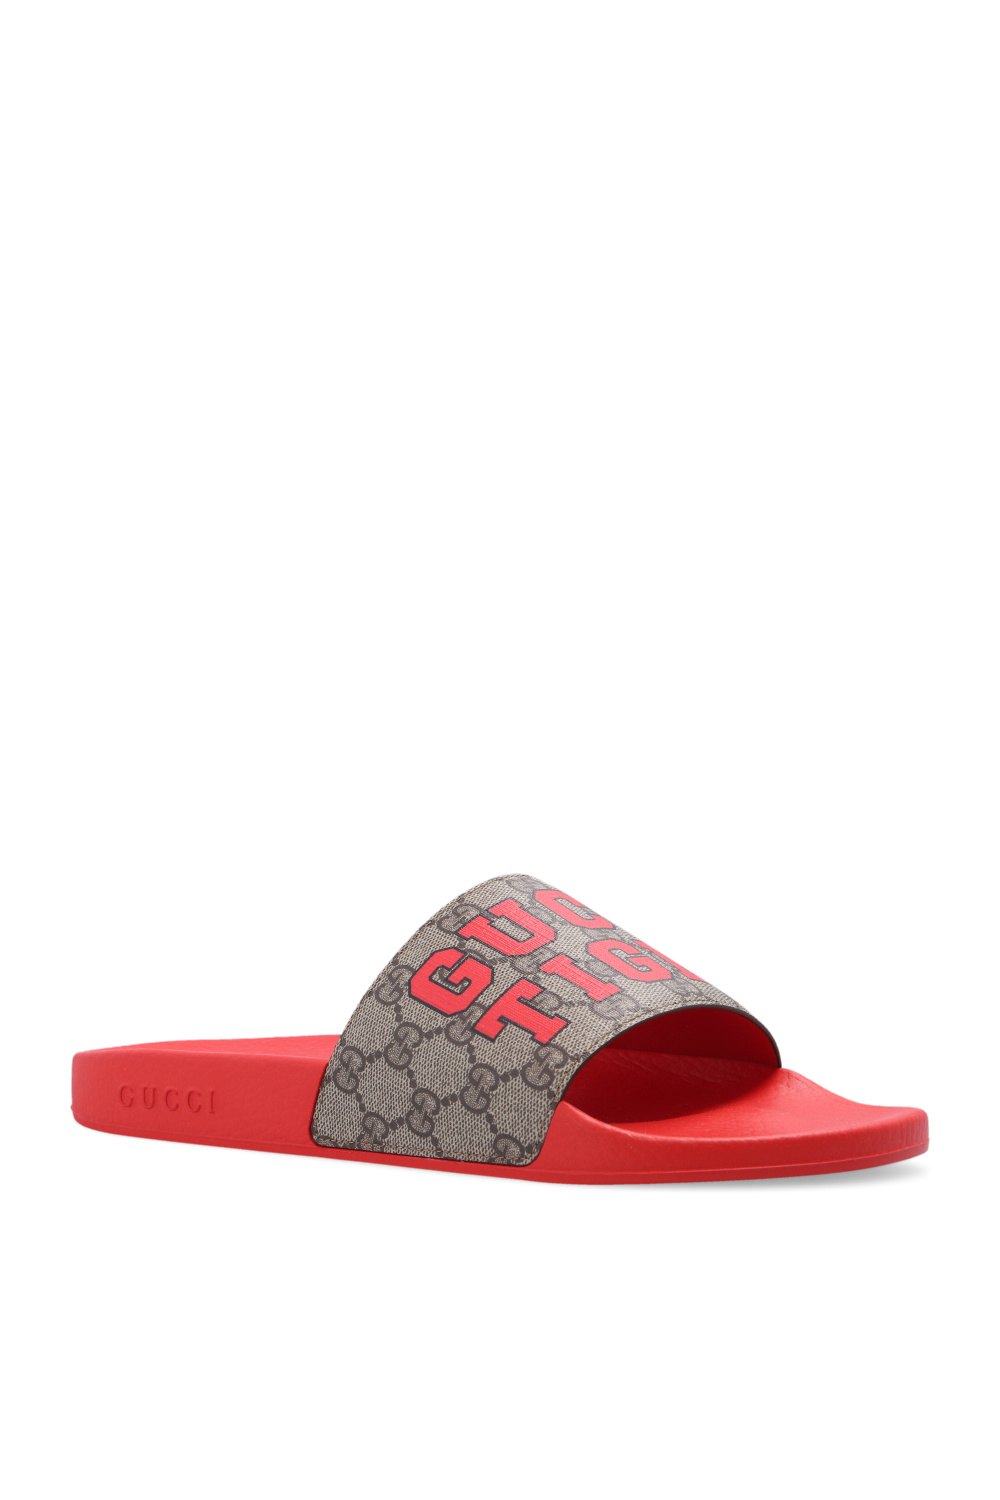 Gucci Interlocking G Rubber Slides Sandals Black 655265 Size 11